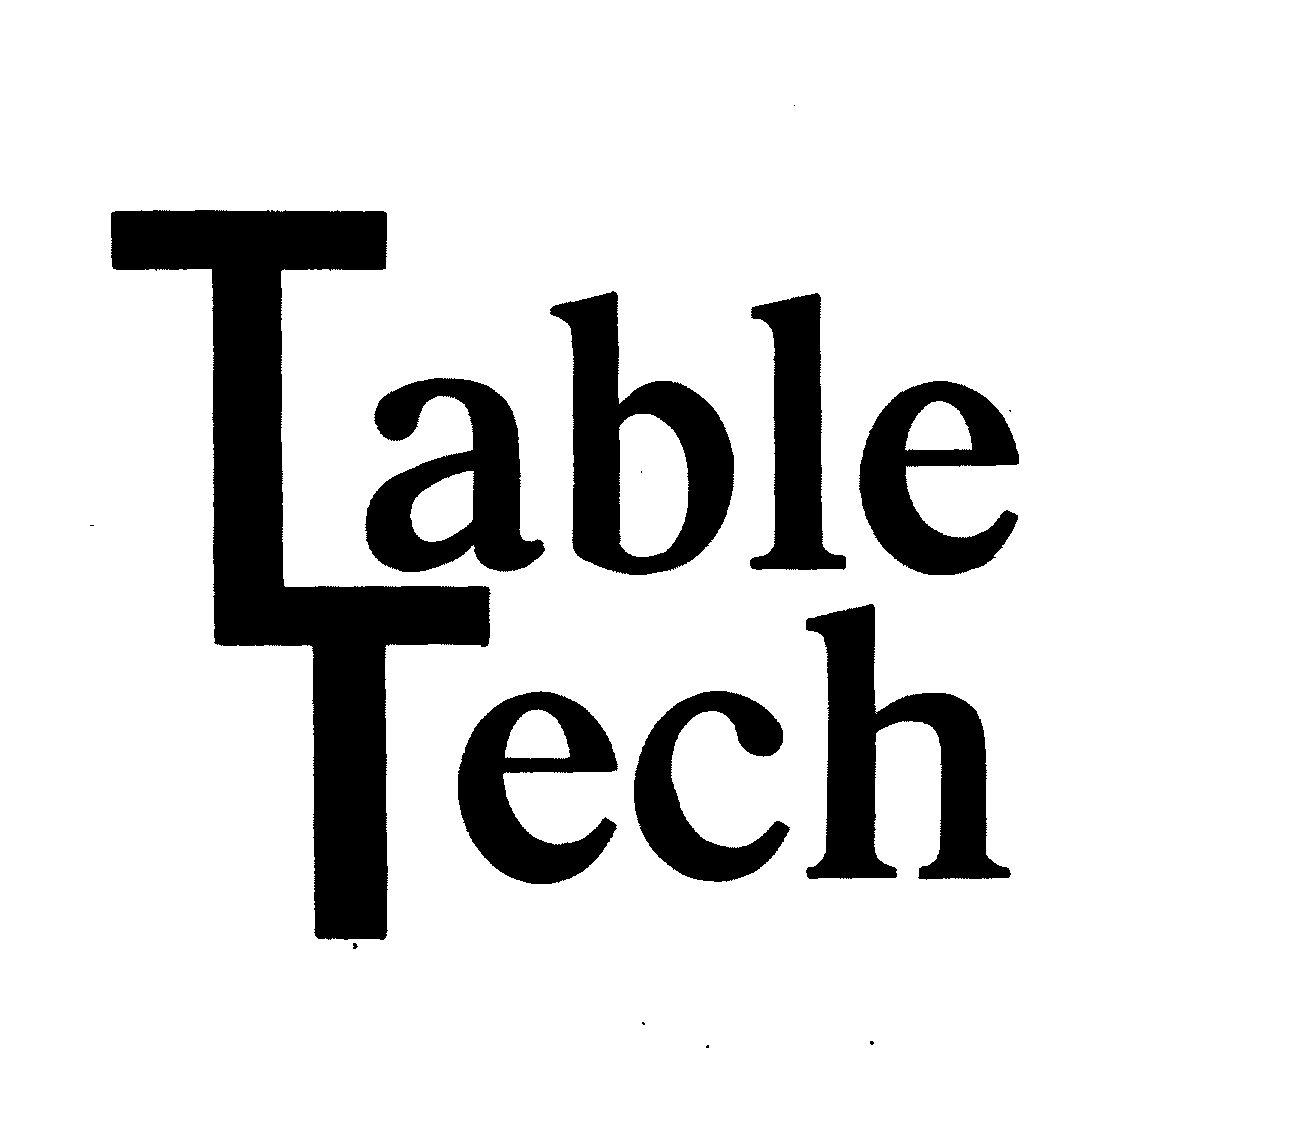  TABLE TECH